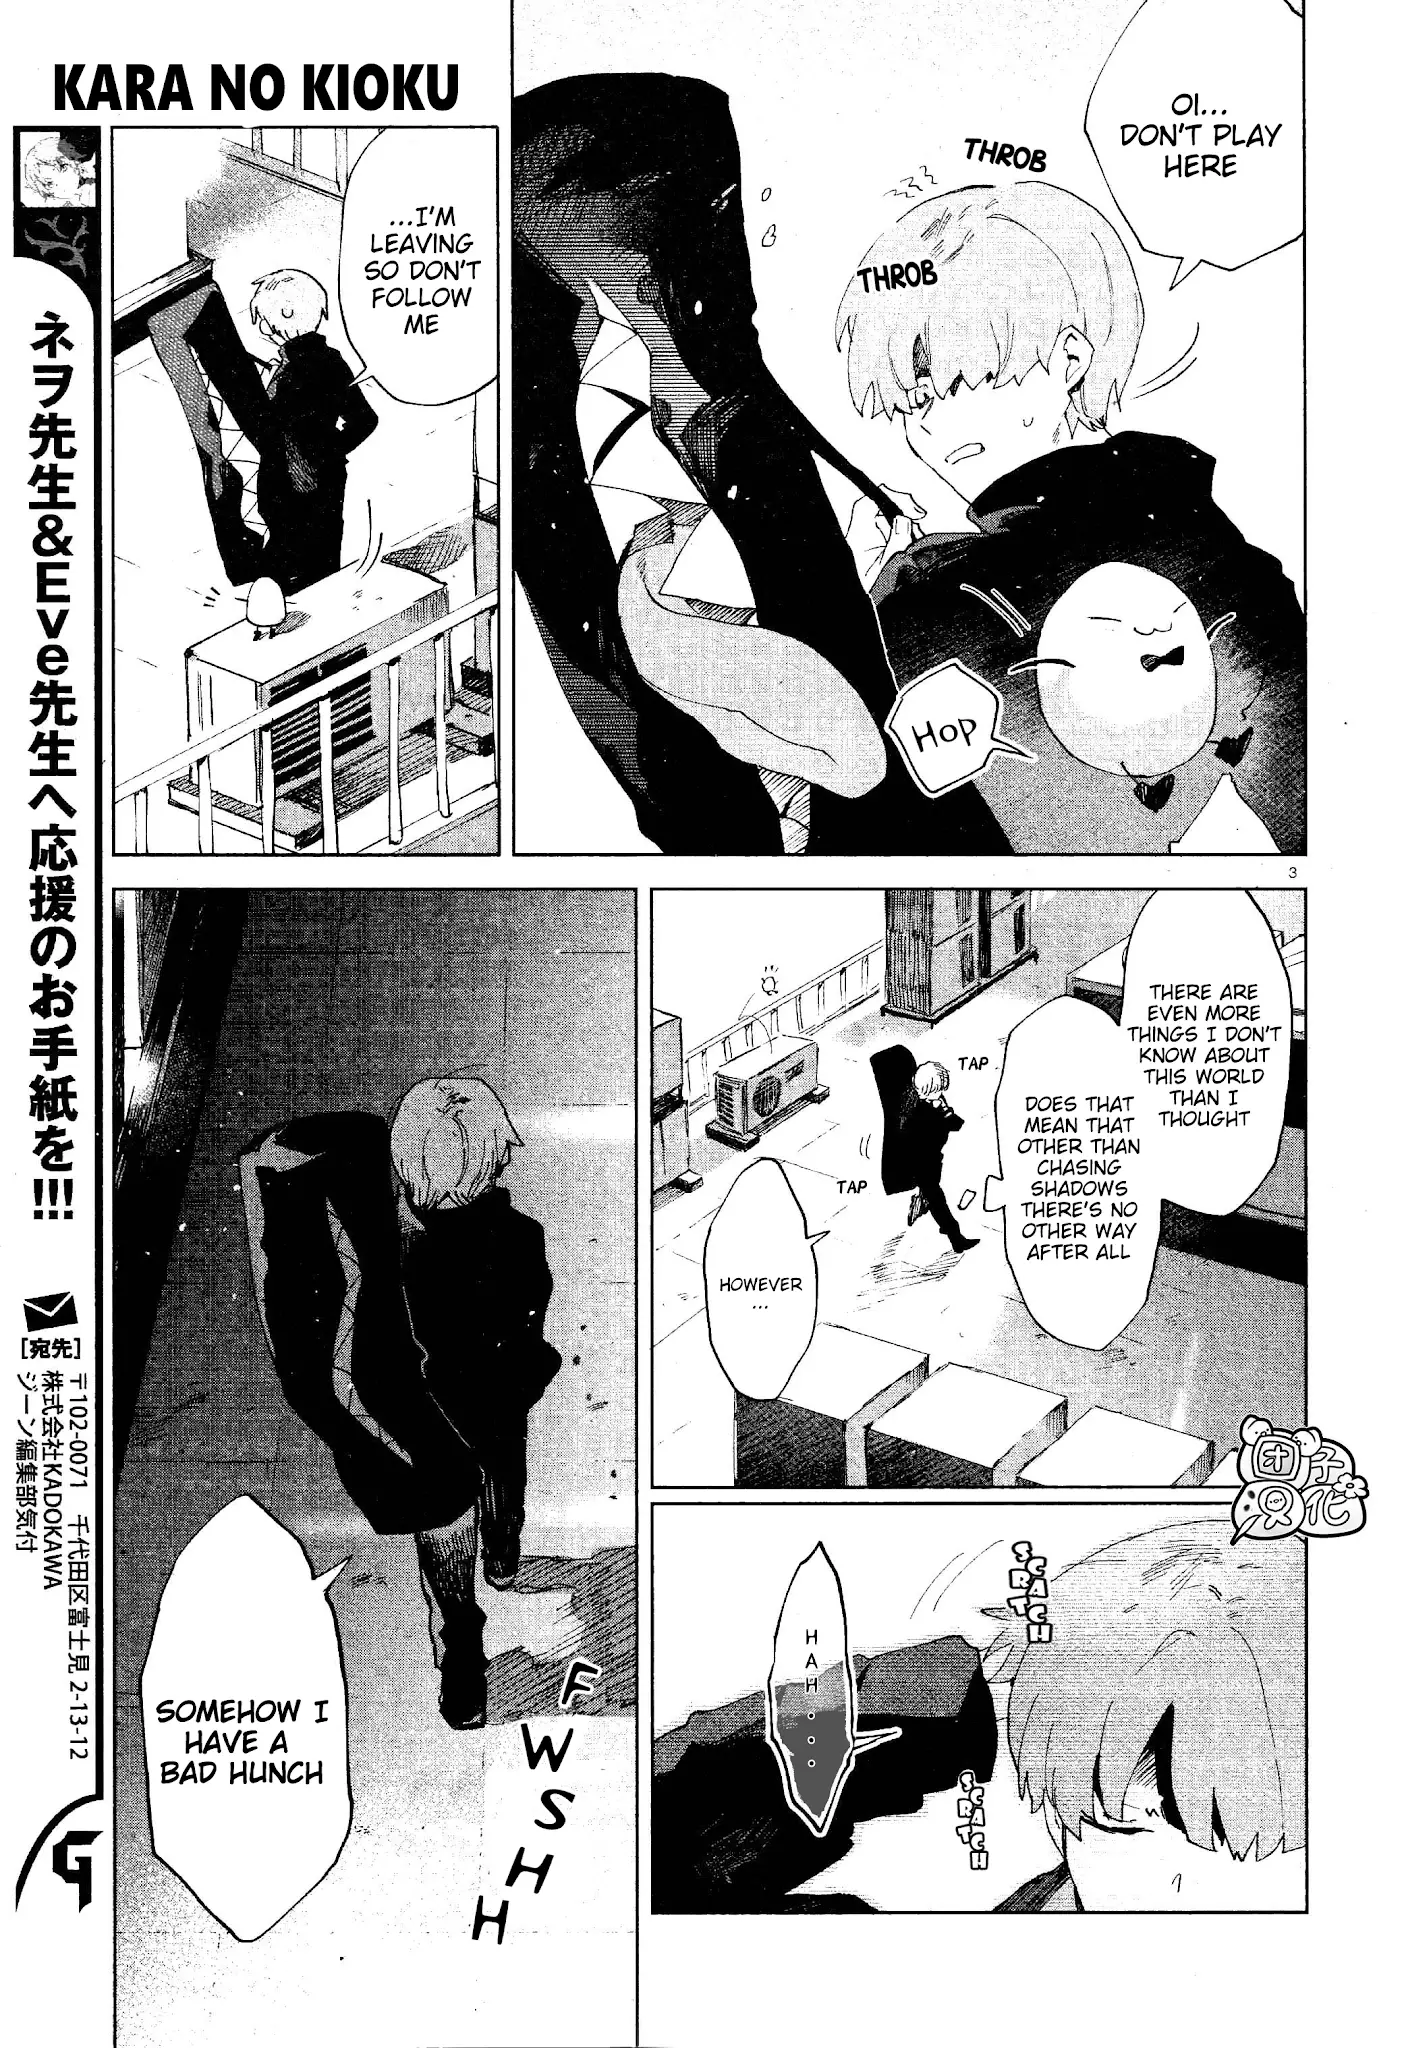 Kara No Kioku - 6 page 3